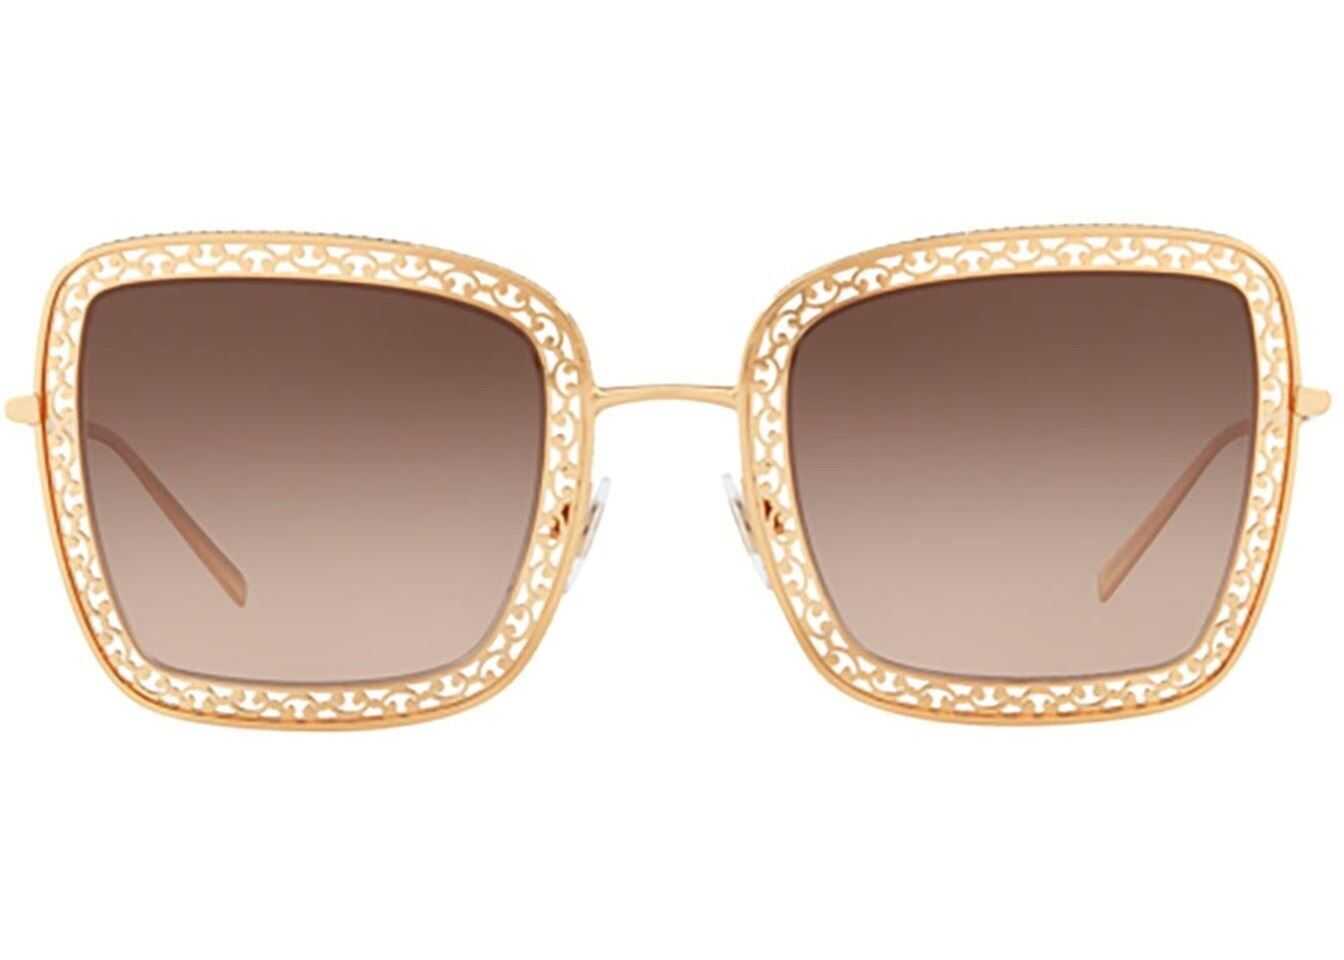 Dolce & Gabbana Embellished Frame Square Sunglasses Gold